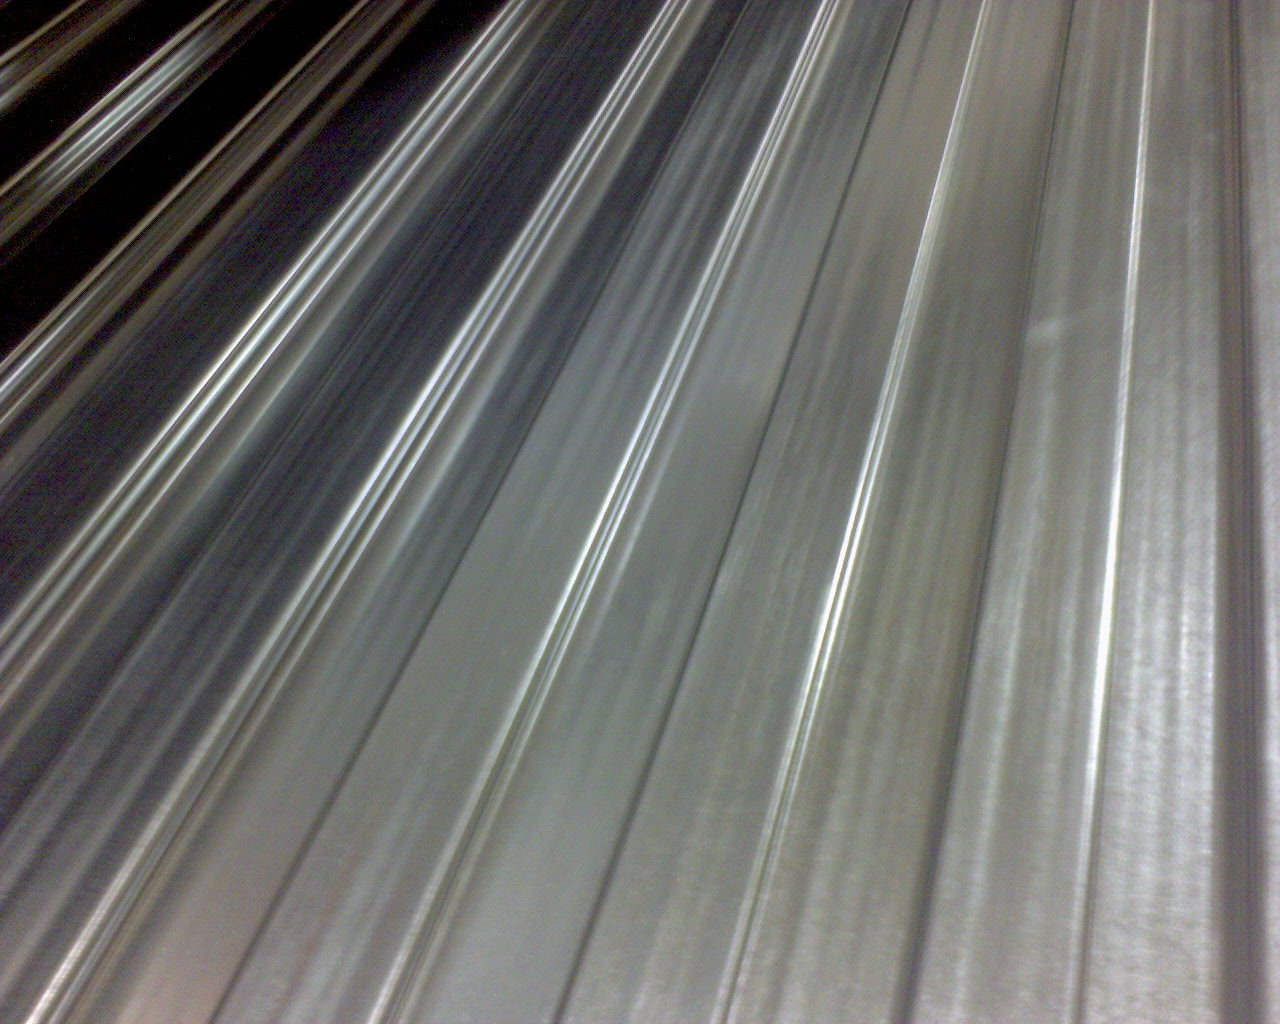 Ce profilé d'aluminium peut être utilisé pour la couverture, par exemple. © Rutger Middendorp, CC BY-NC-ND 2.0, Flickr